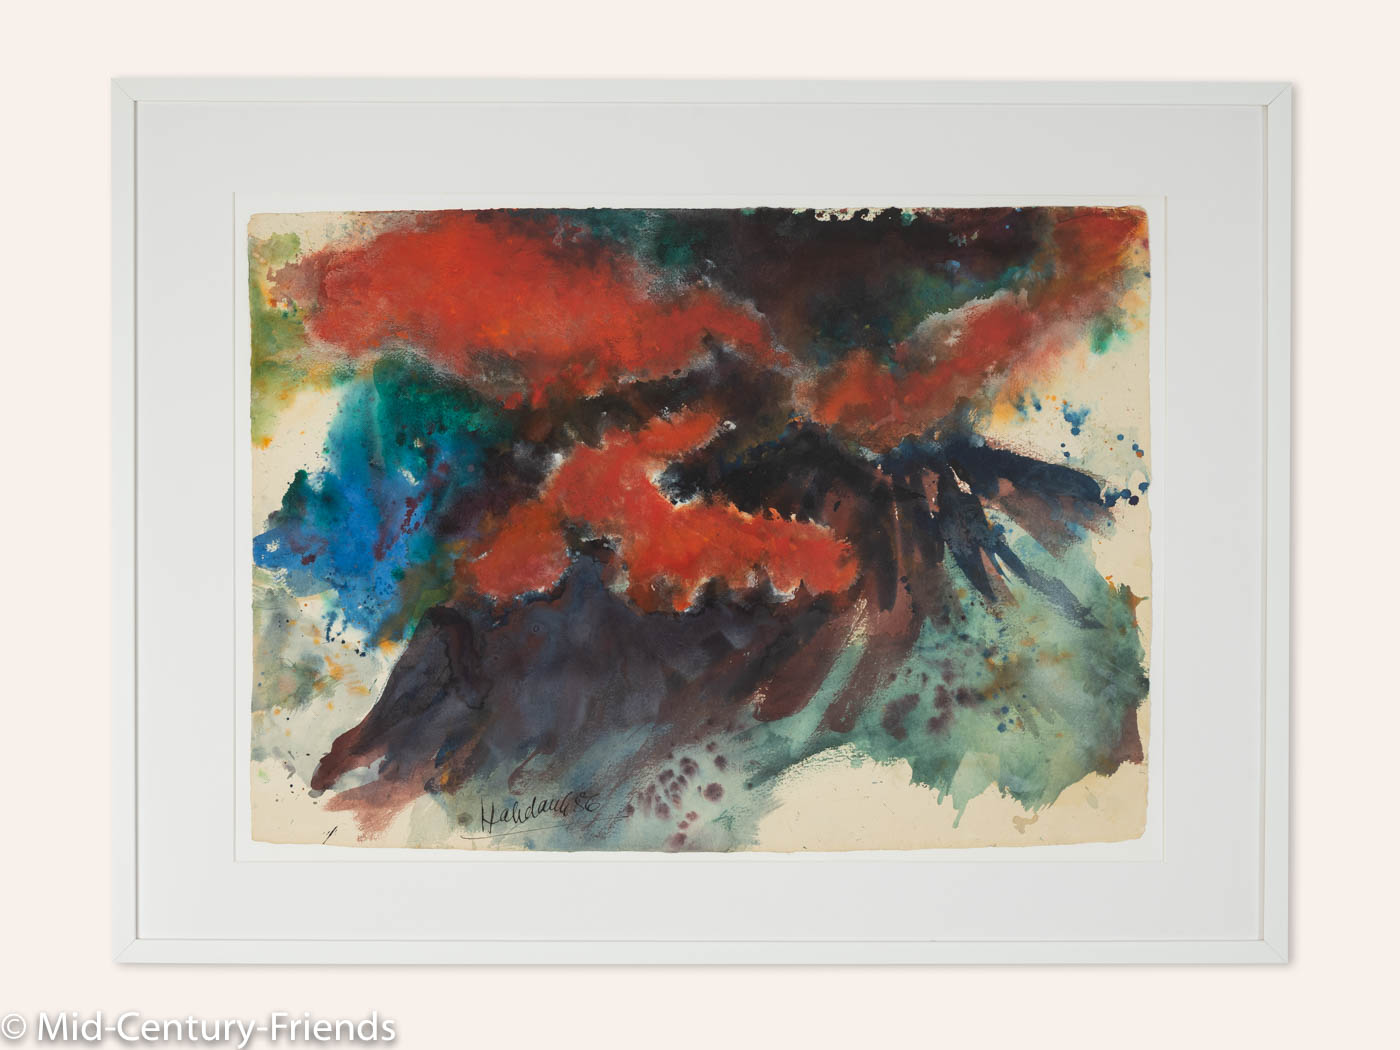 Vulkanisch, Aquarell auf Papier, 104 x 79cm